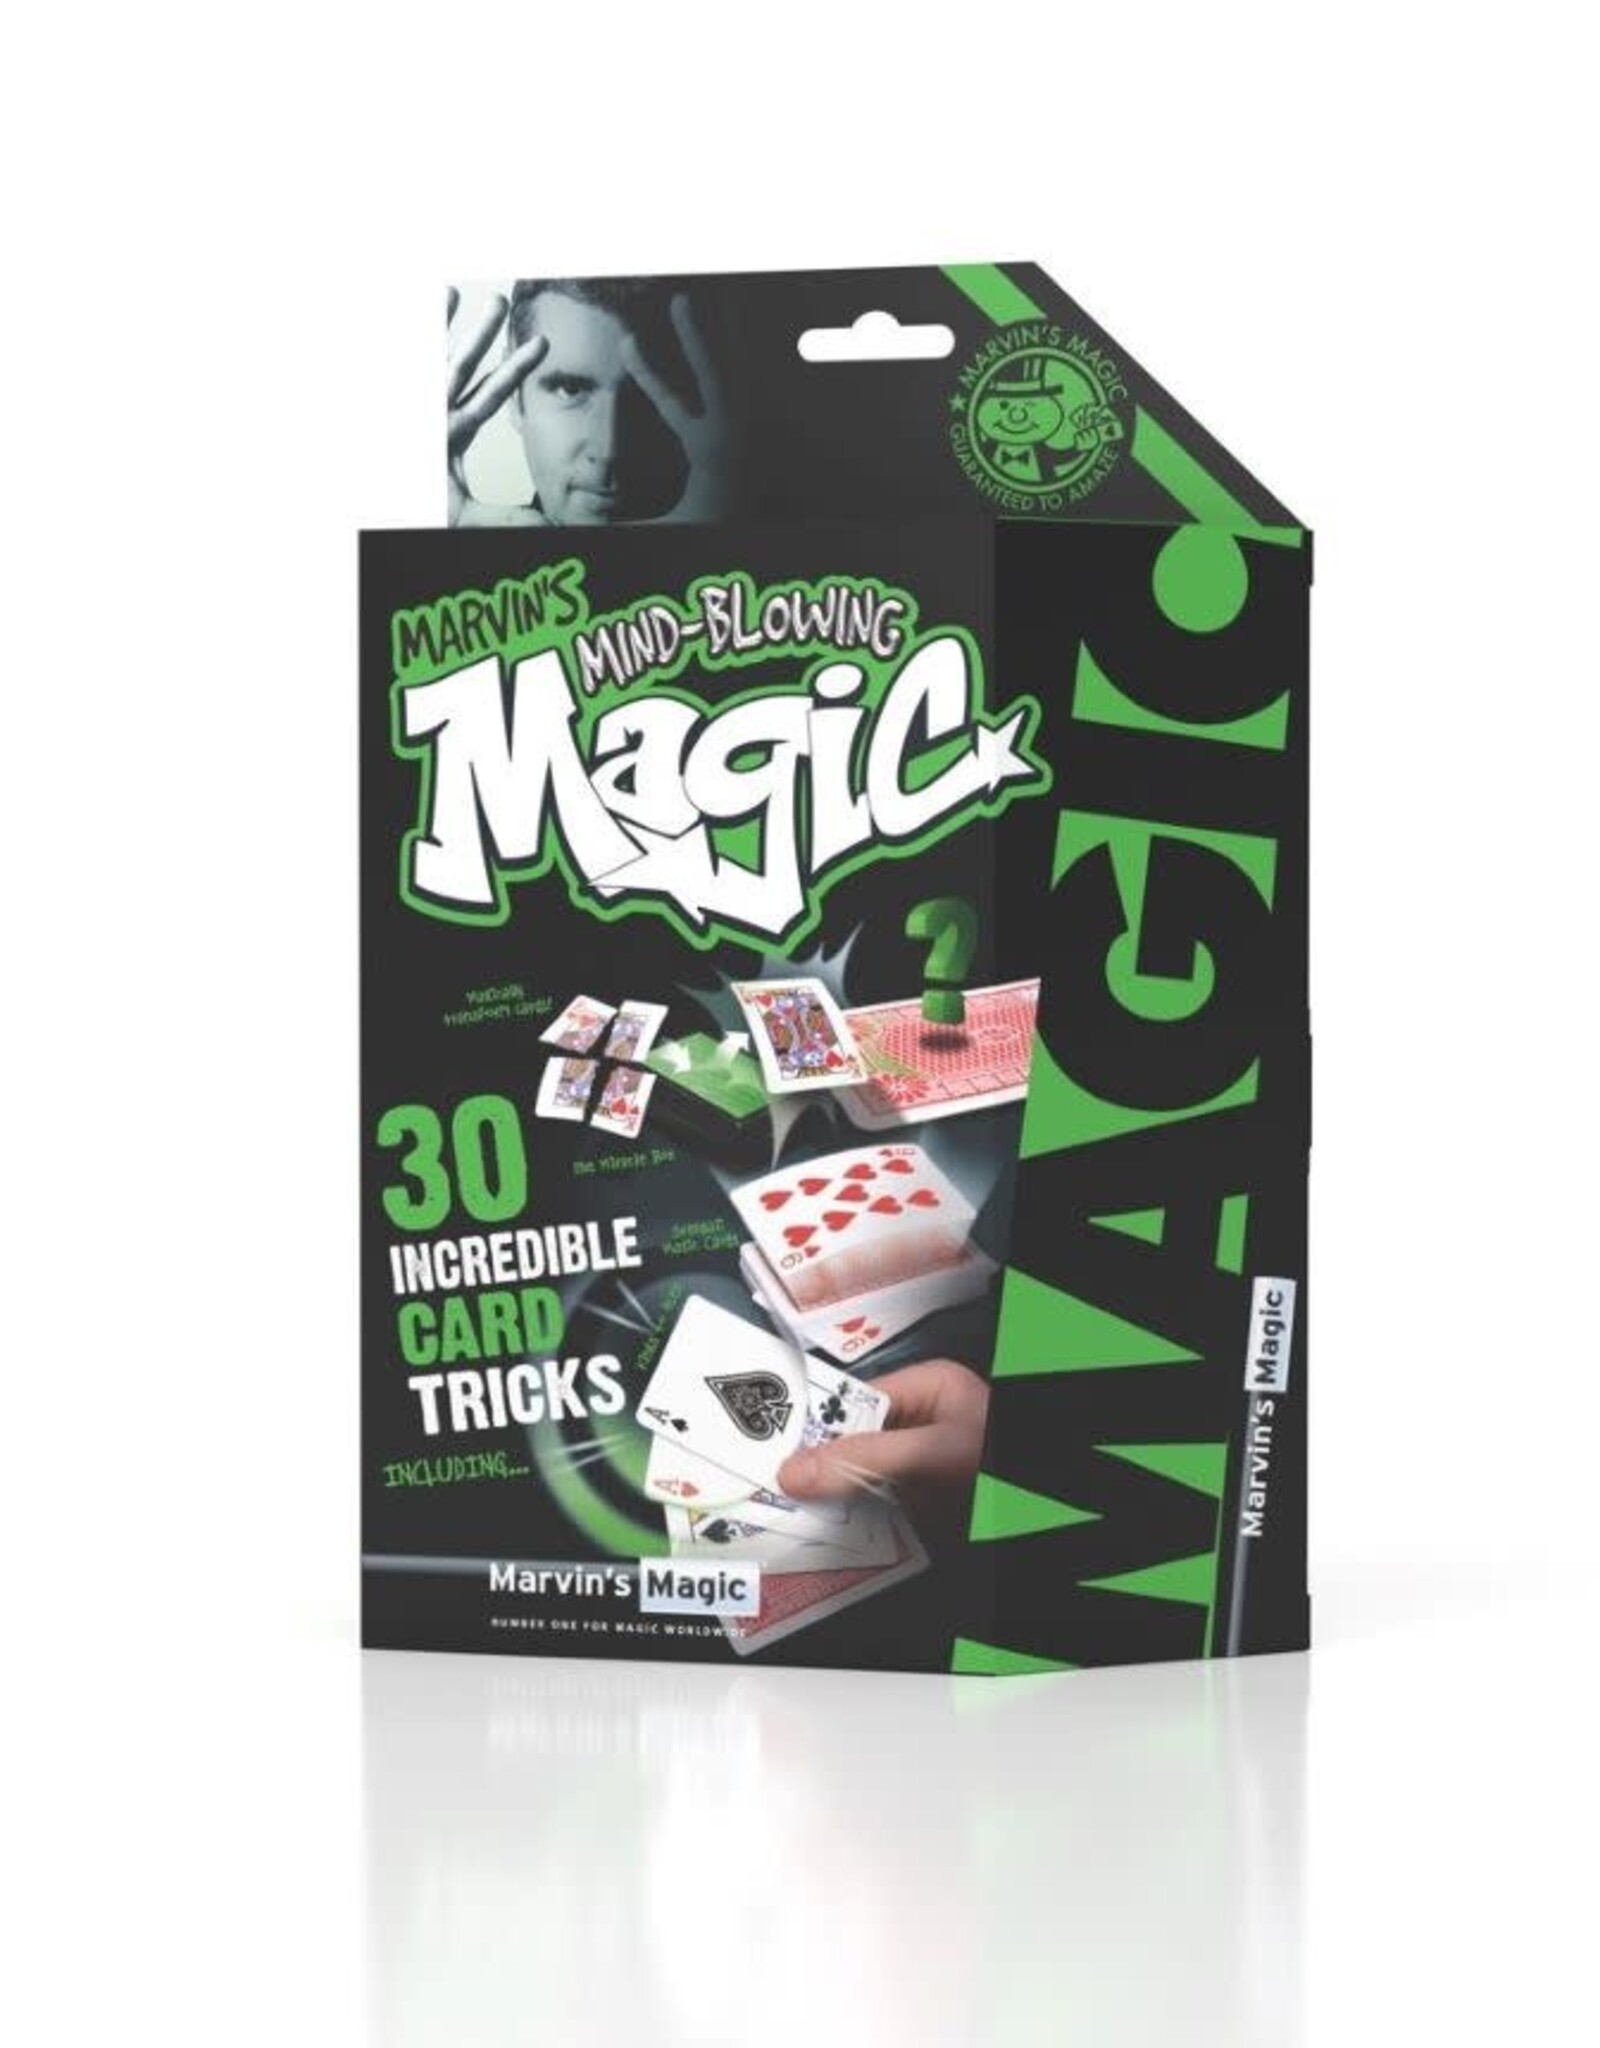 Marvin's Magic ULTIMATE MAGIC 30 INCREDIBLE CARD TRICKS